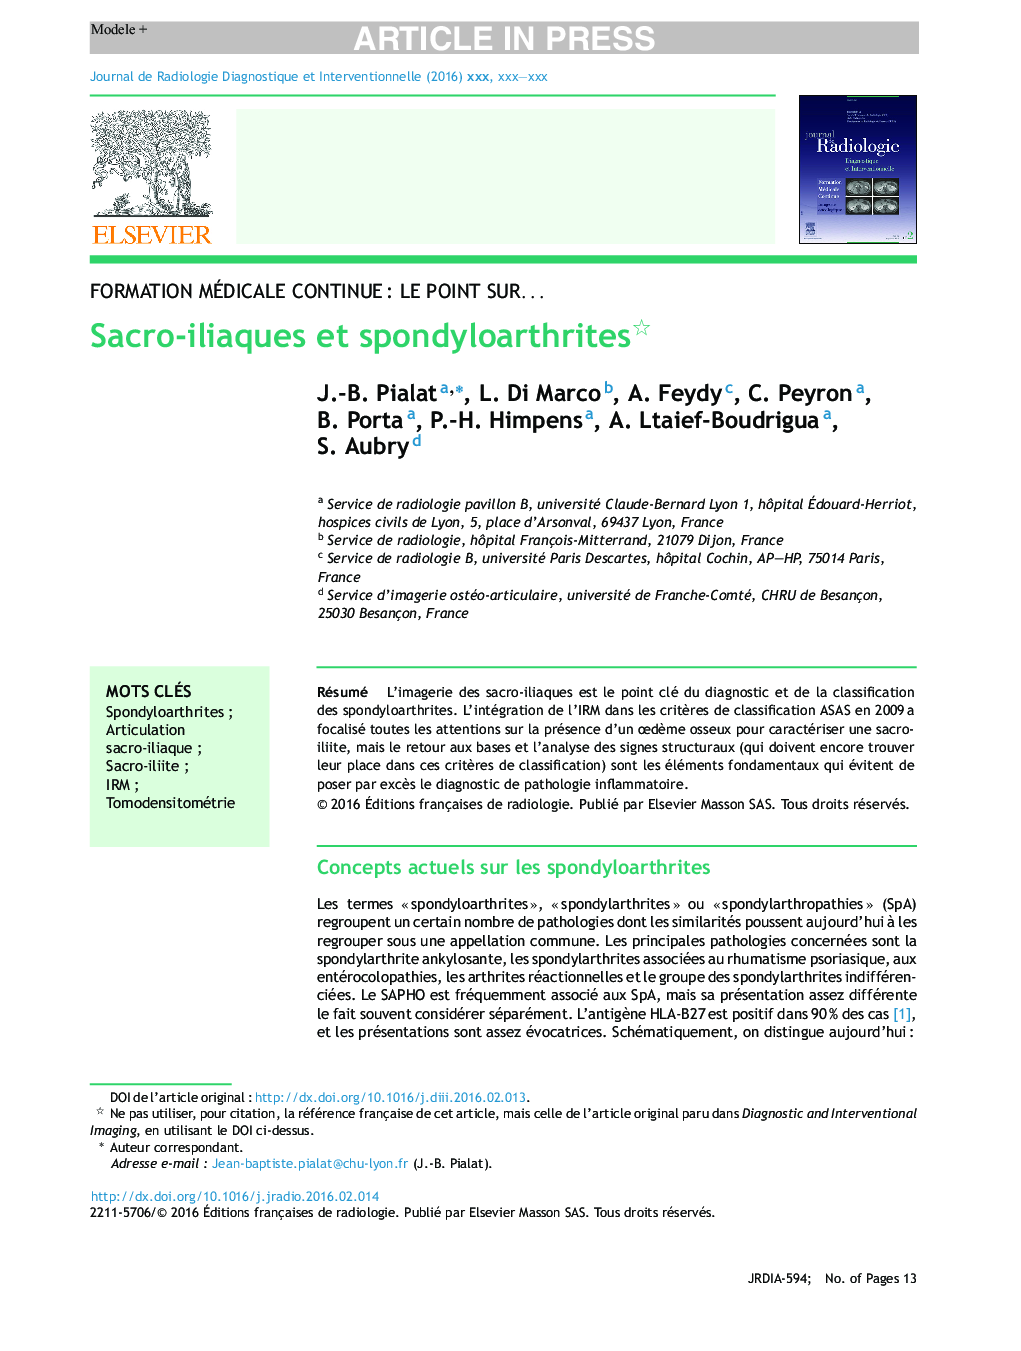 Sacro-iliaques et spondyloarthrites